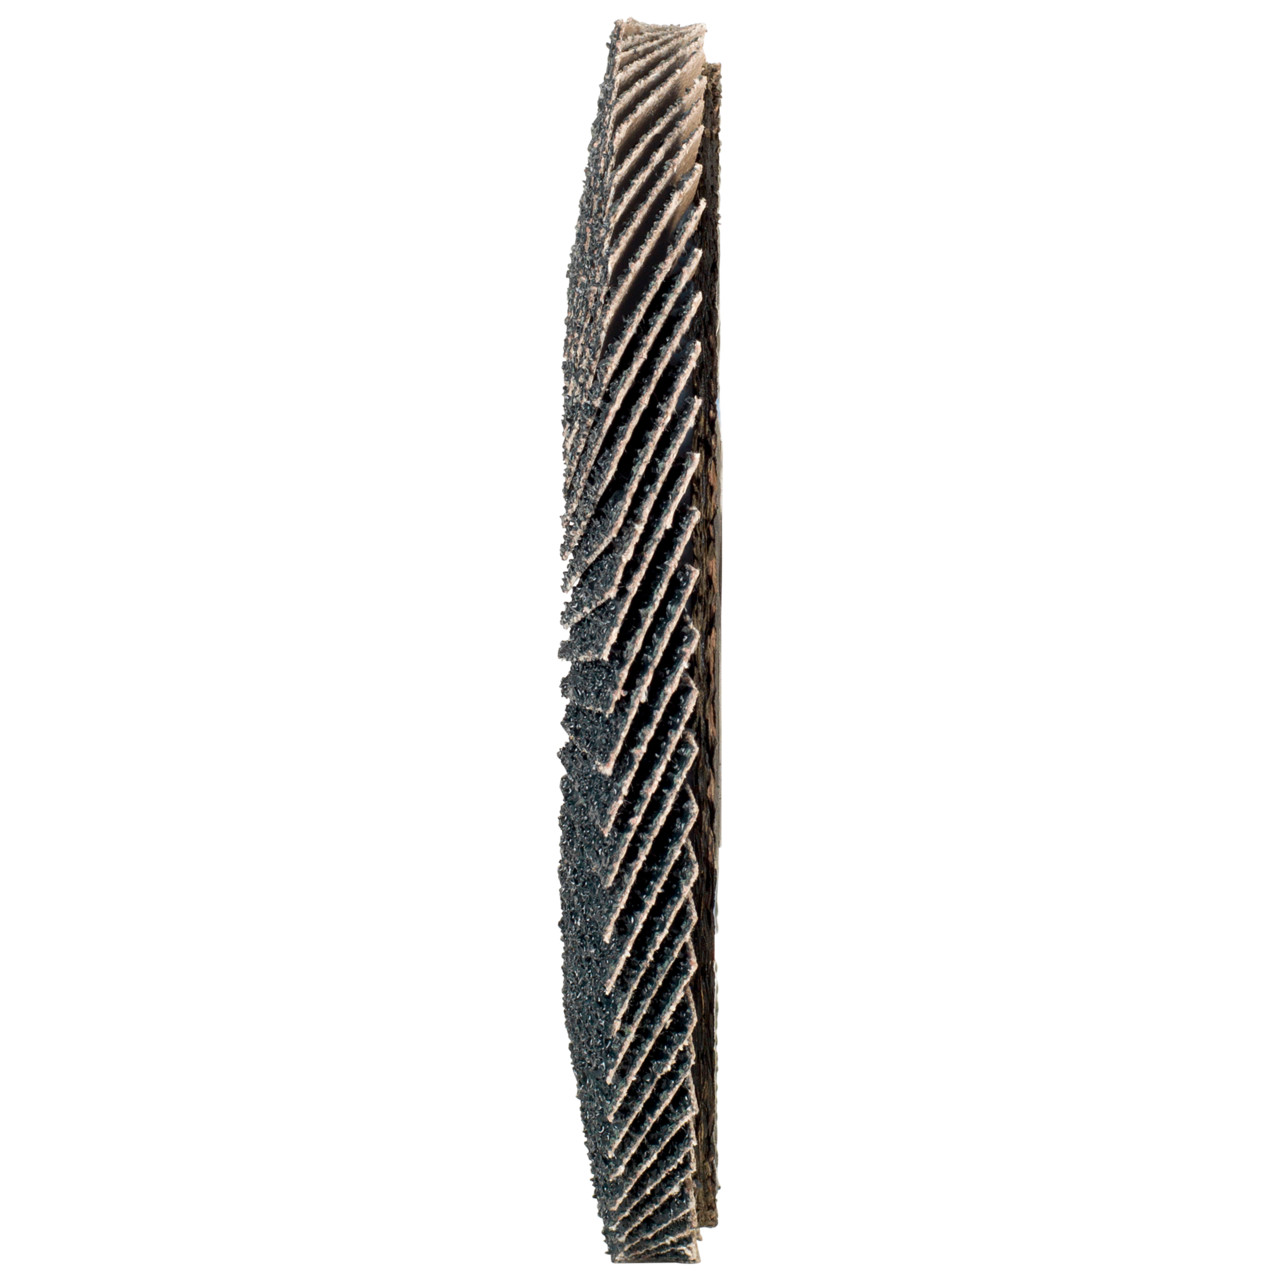 Rondella dentata Tyrolit DxH 150x22.2 2in1 per acciaio e acciaio inox, P80, forma: 27A - versione offset (versione con corpo portante in fibra di vetro), Art. 519214